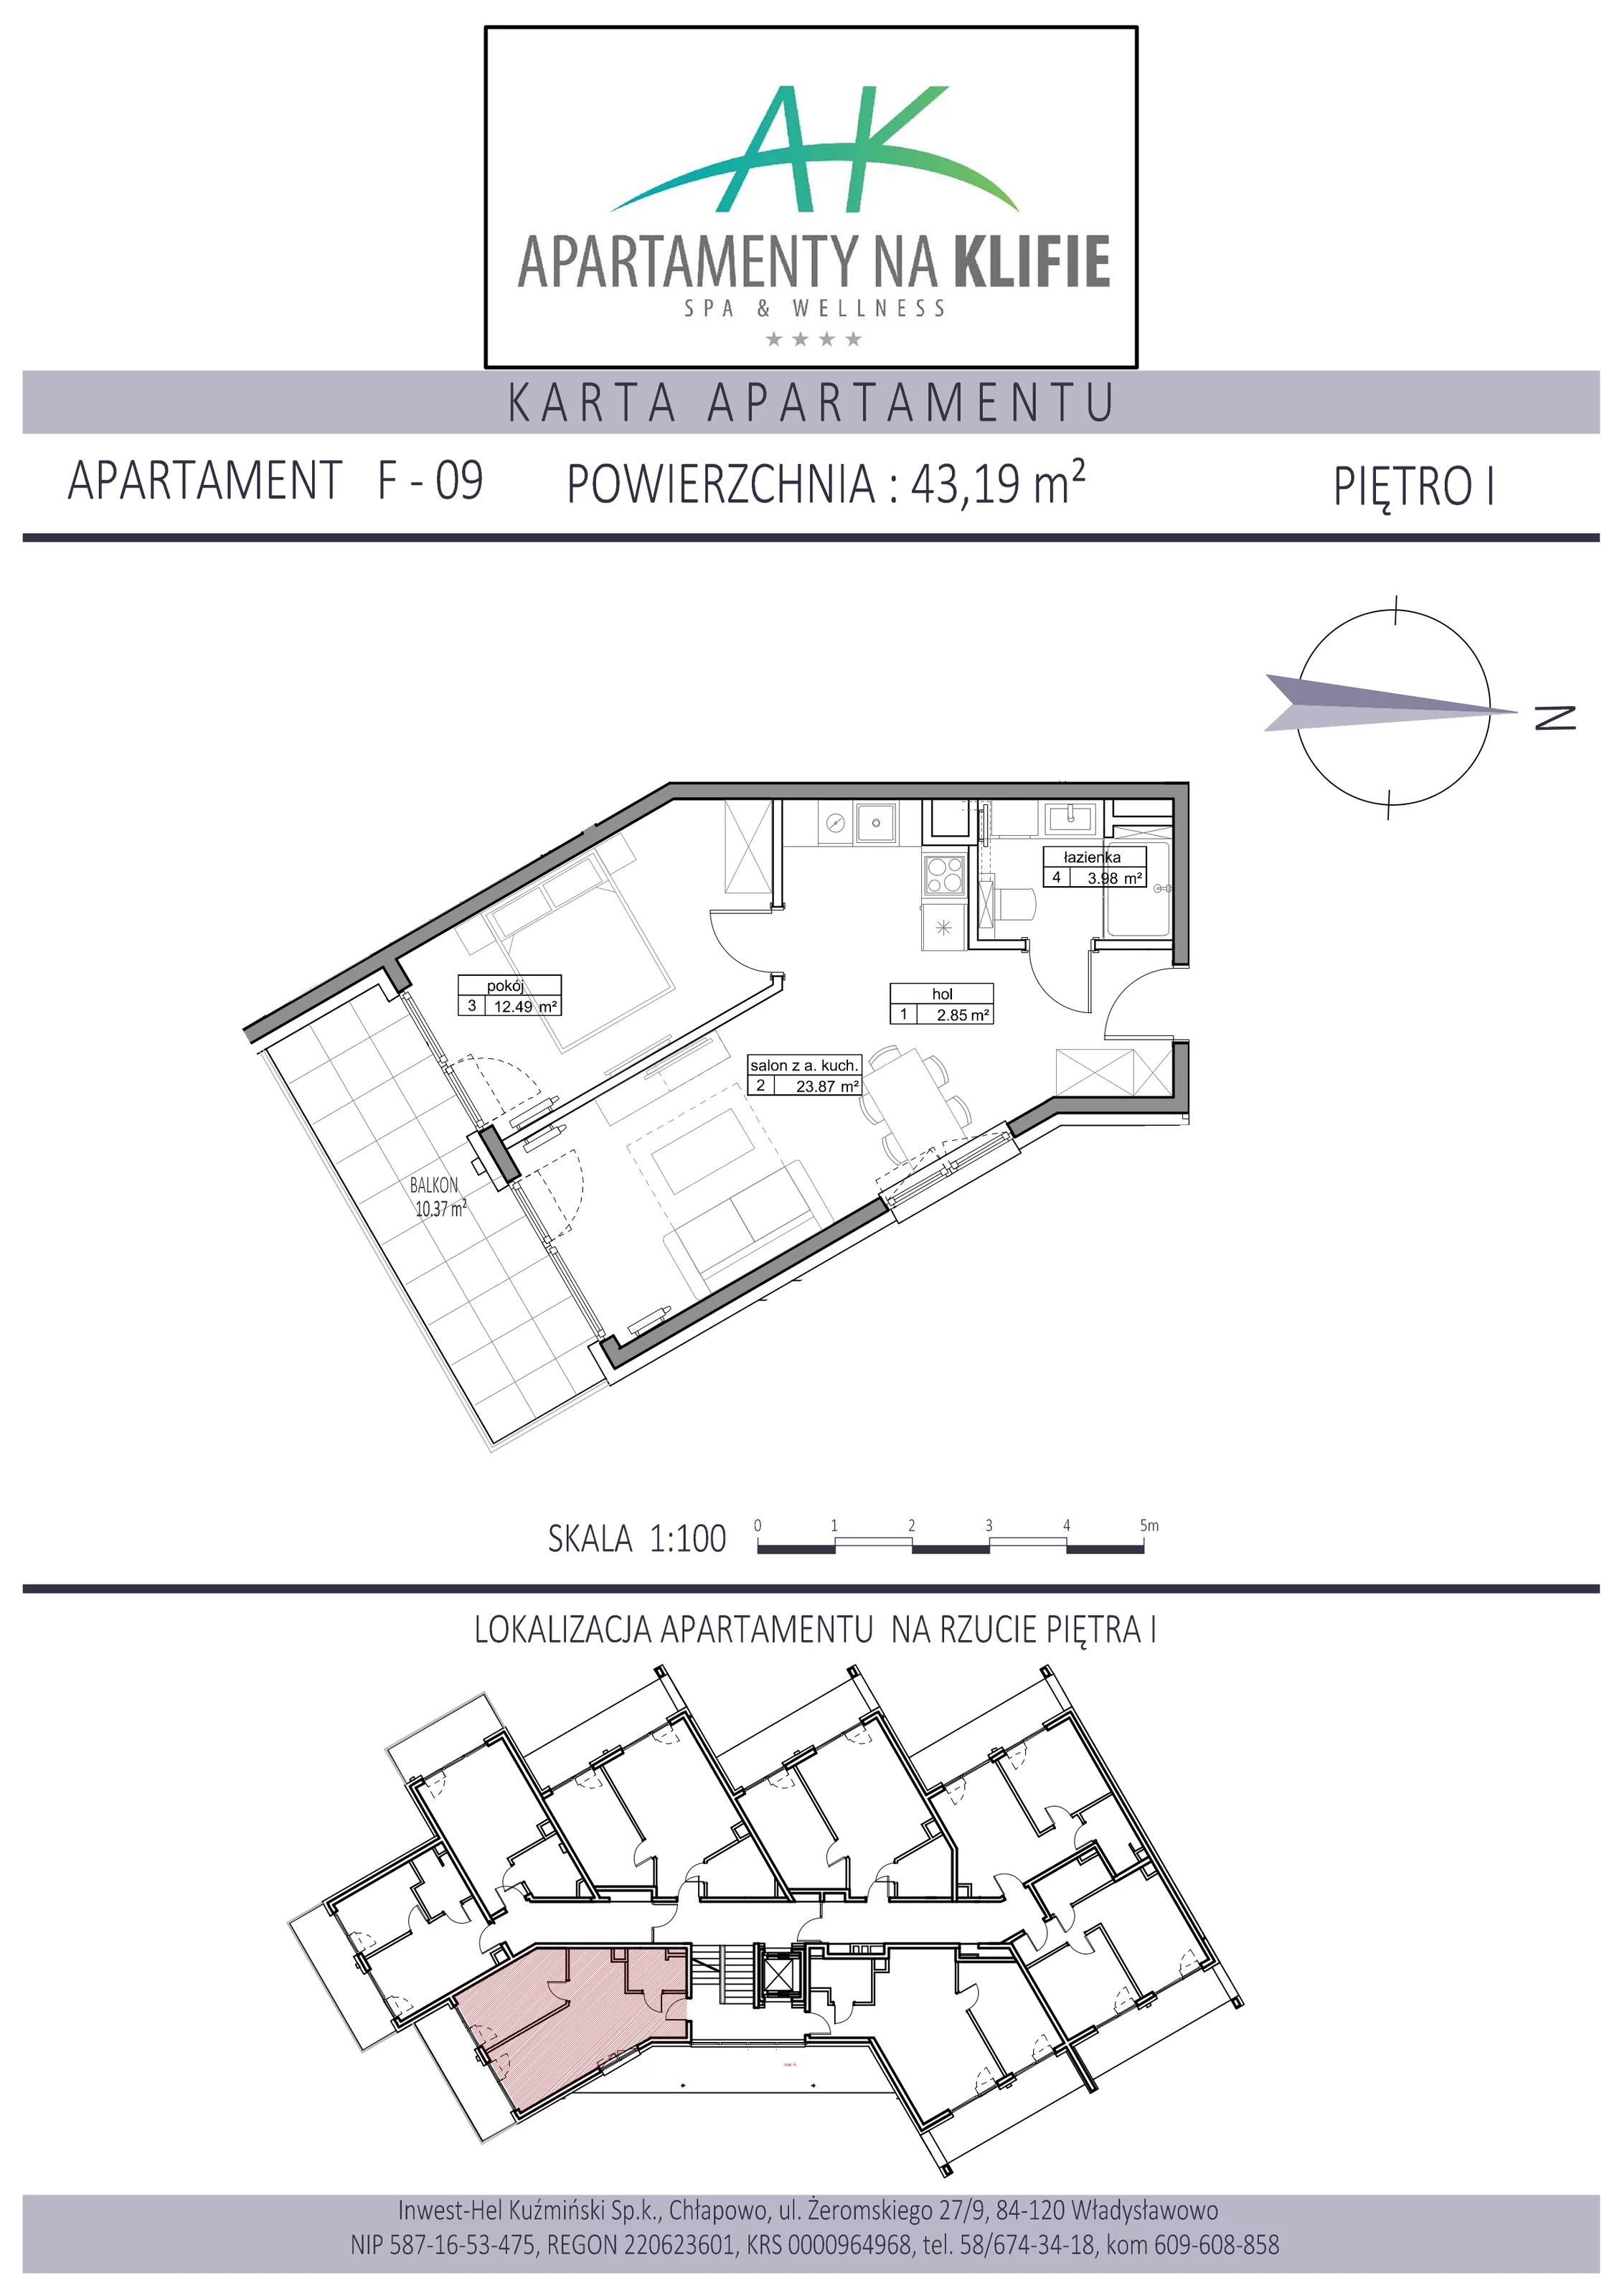 Apartament 43,19 m², piętro 1, oferta nr F-09, Apartamenty na Klifie, Władysławowo, Chłapowo, ul. Żeromskiego 27